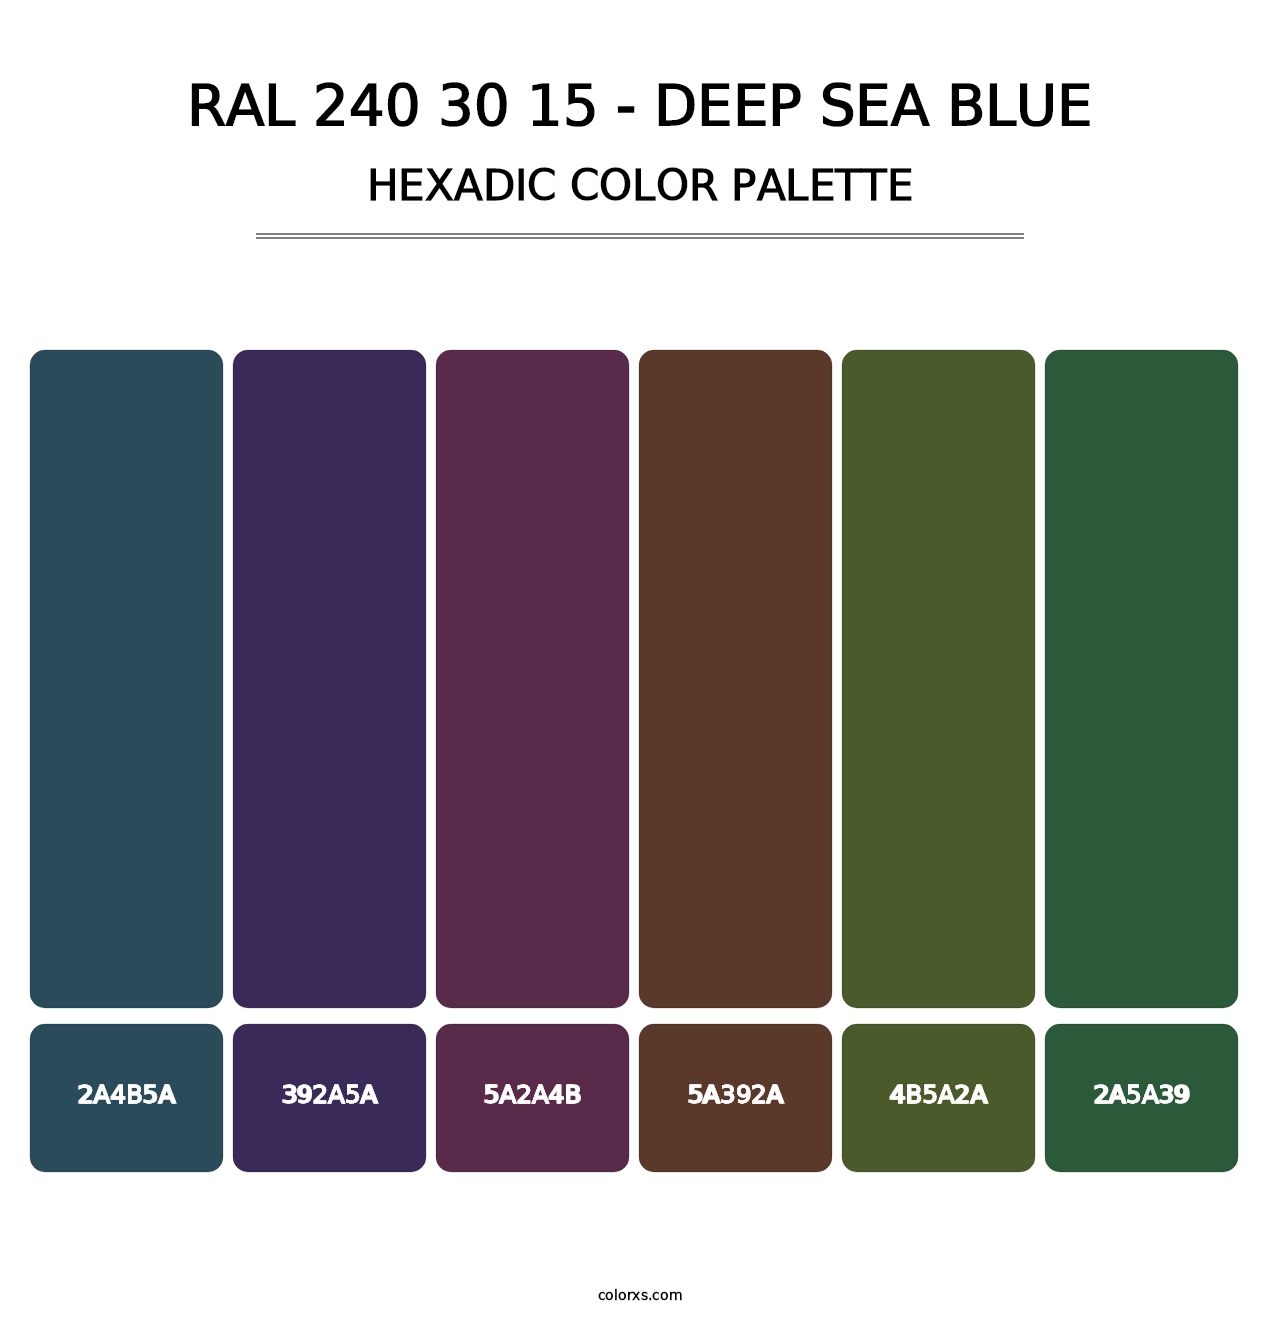 RAL 240 30 15 - Deep Sea Blue - Hexadic Color Palette